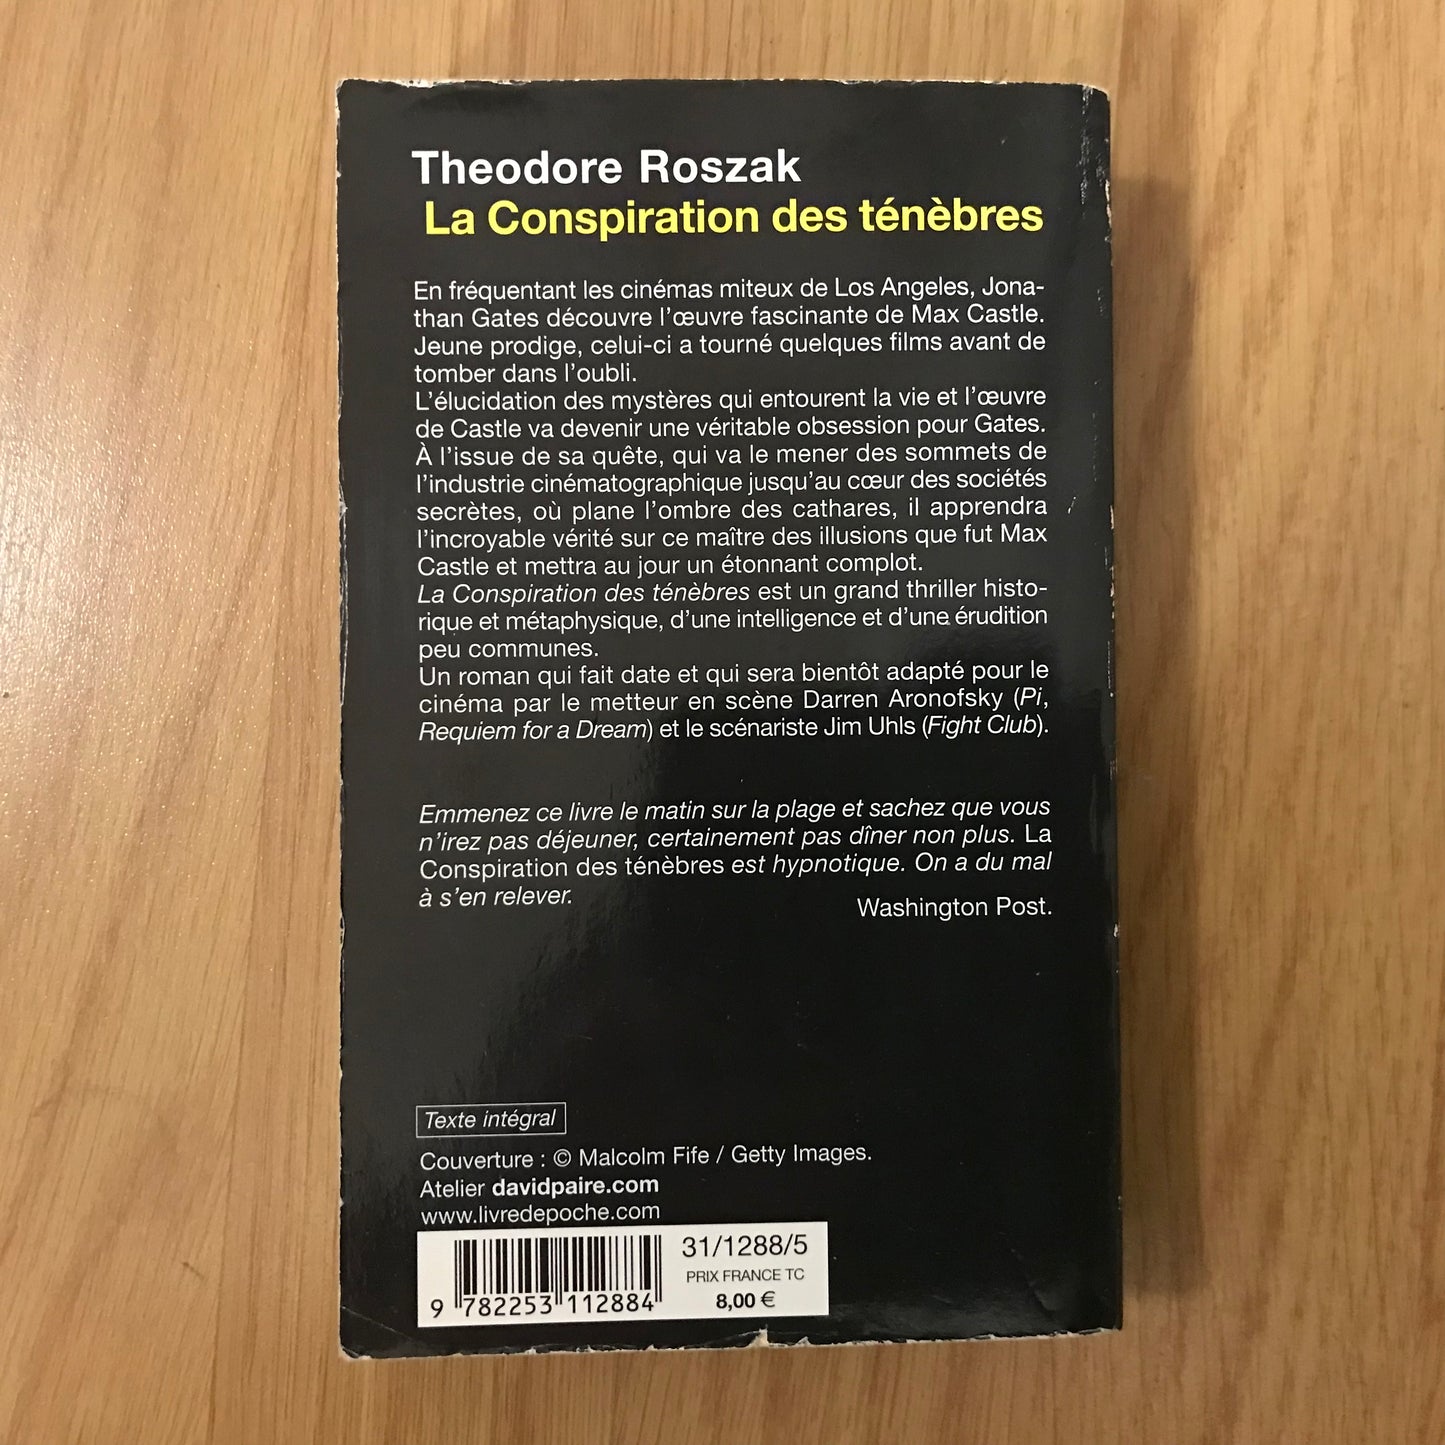 Roszak, Theodore - La conspiration des ténèbres